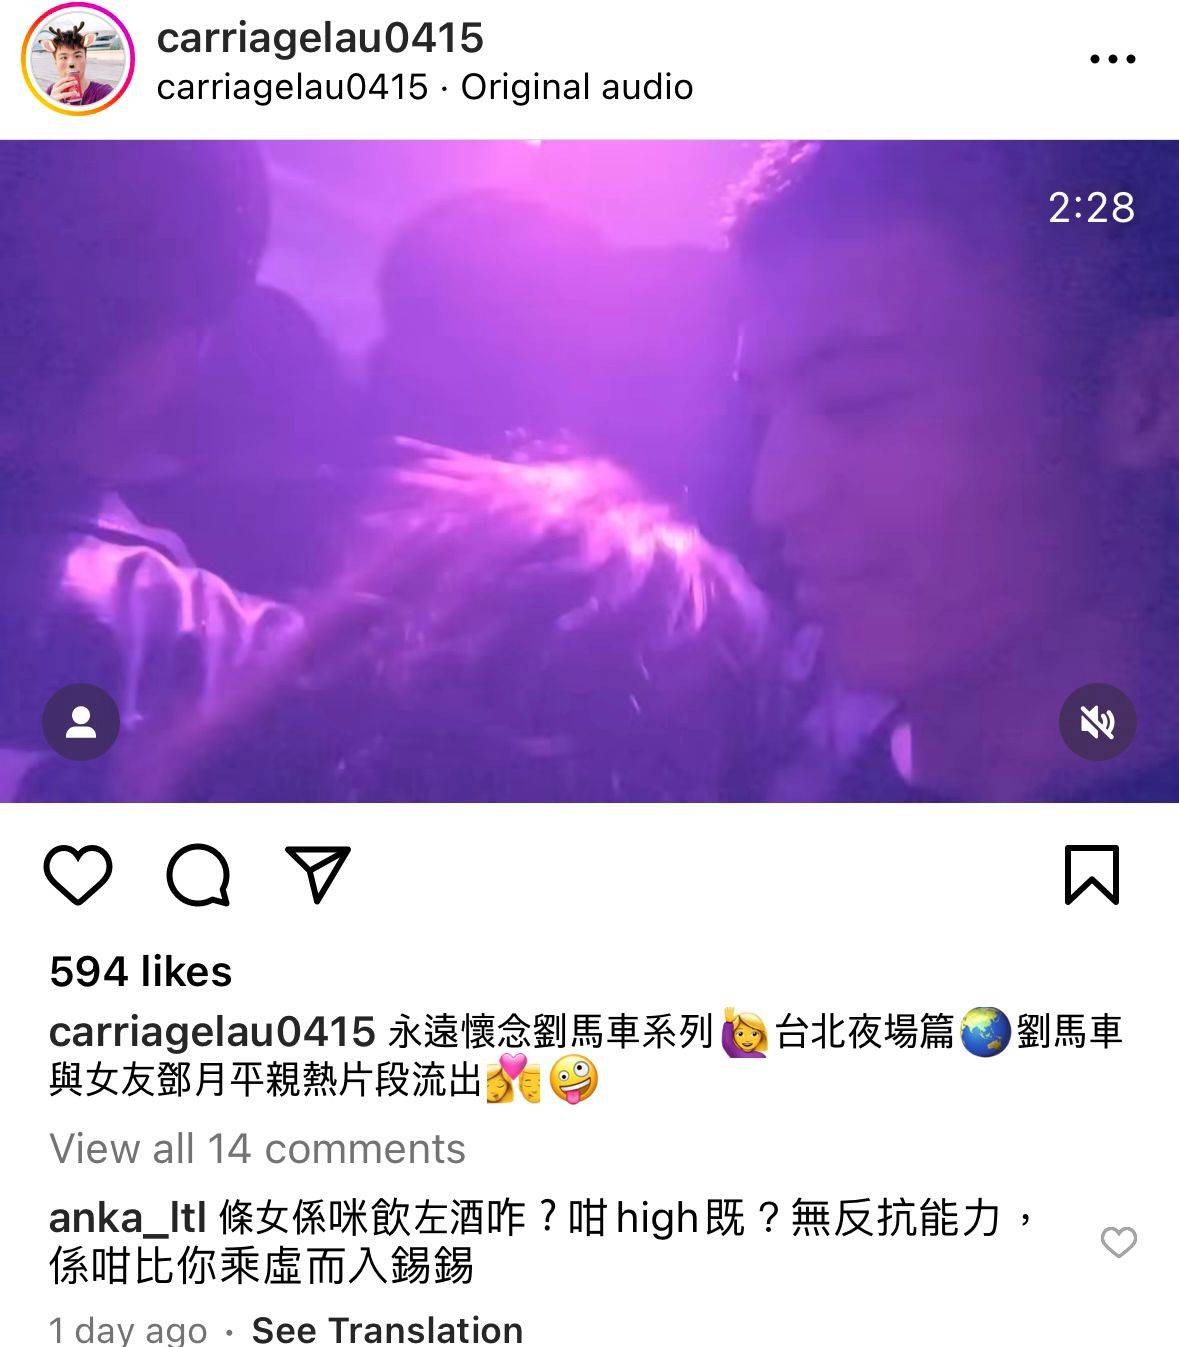 刘马车 霍哥 其中有一条影片写明「刘马车与女友邓月平亲热片段流出」。